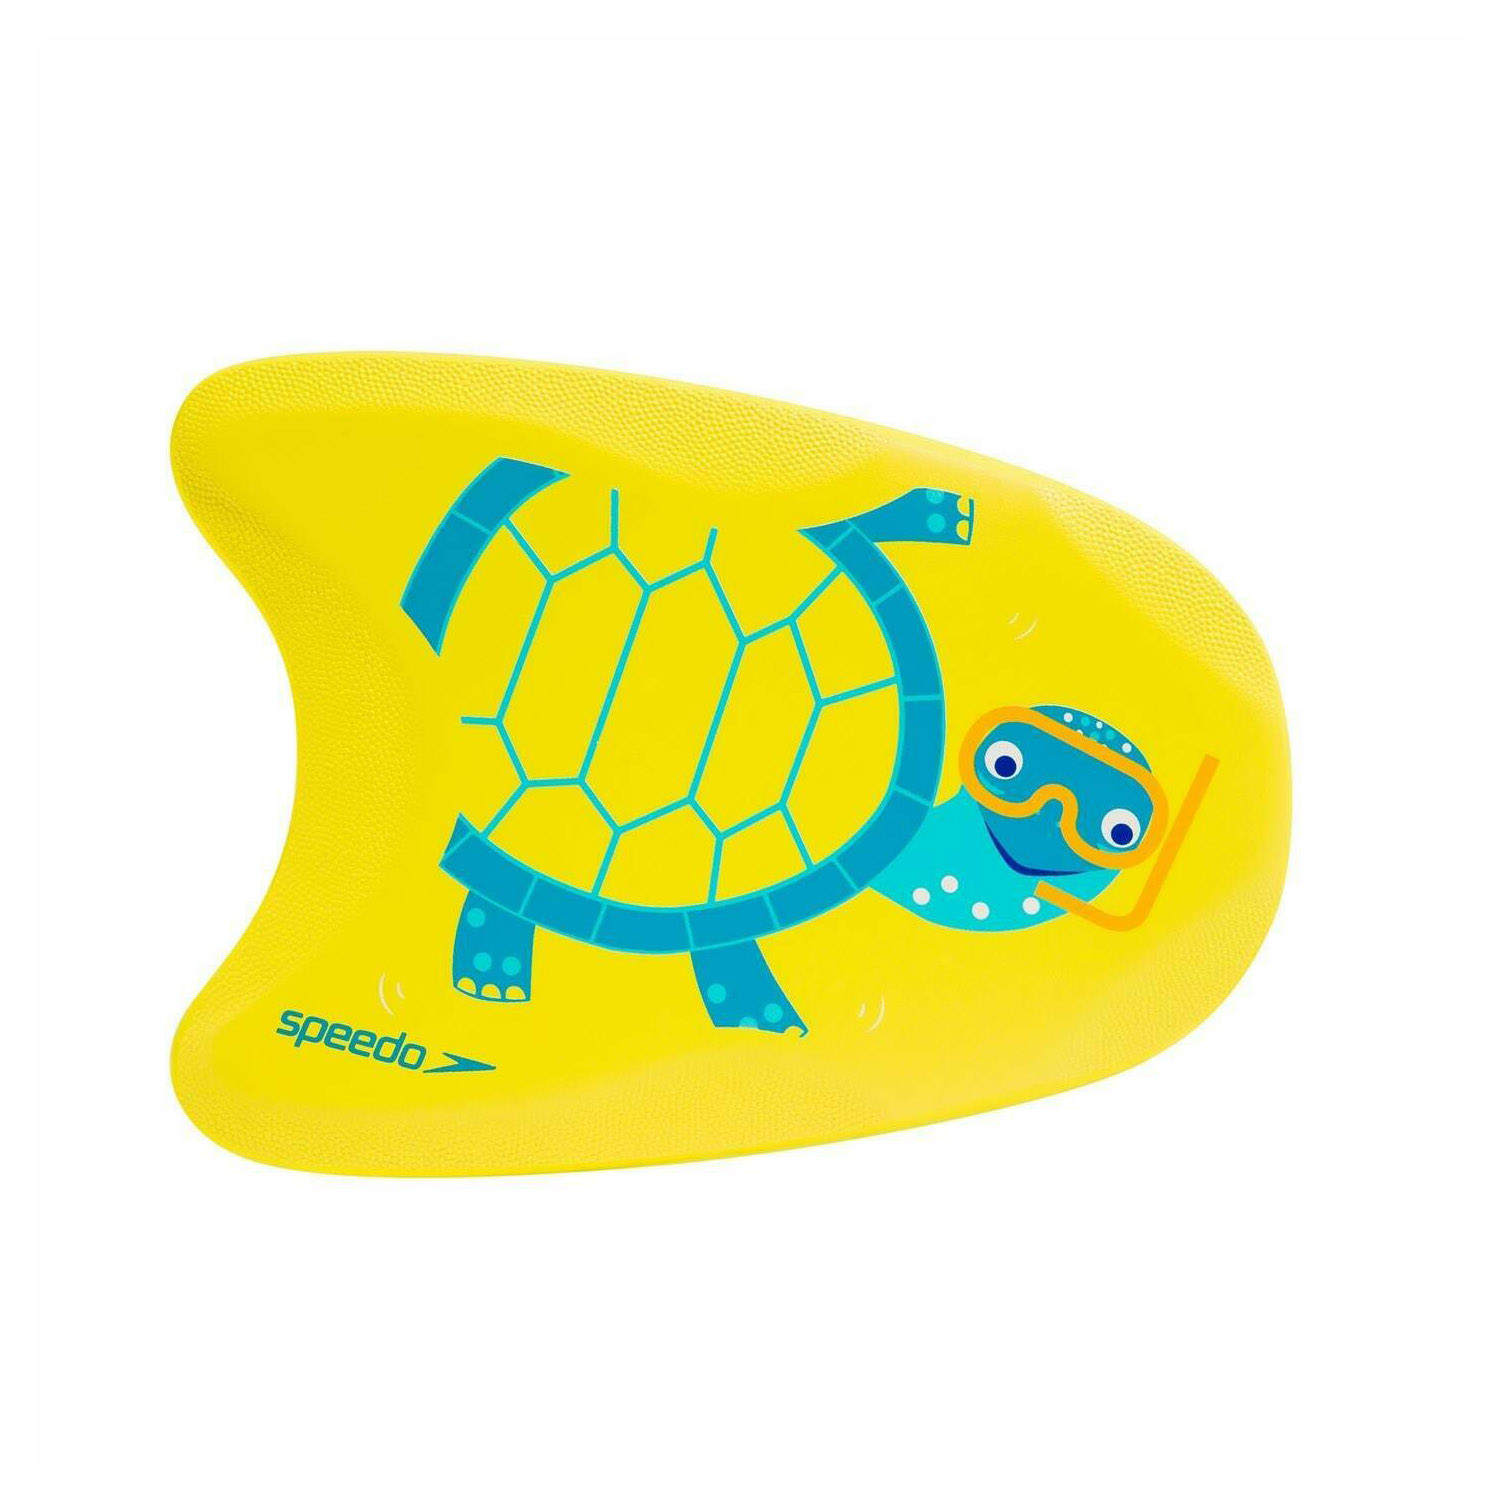 Speedo Turtle Printed Float Erkek Çocuk Yüzücü Tahtası - SARI - 1